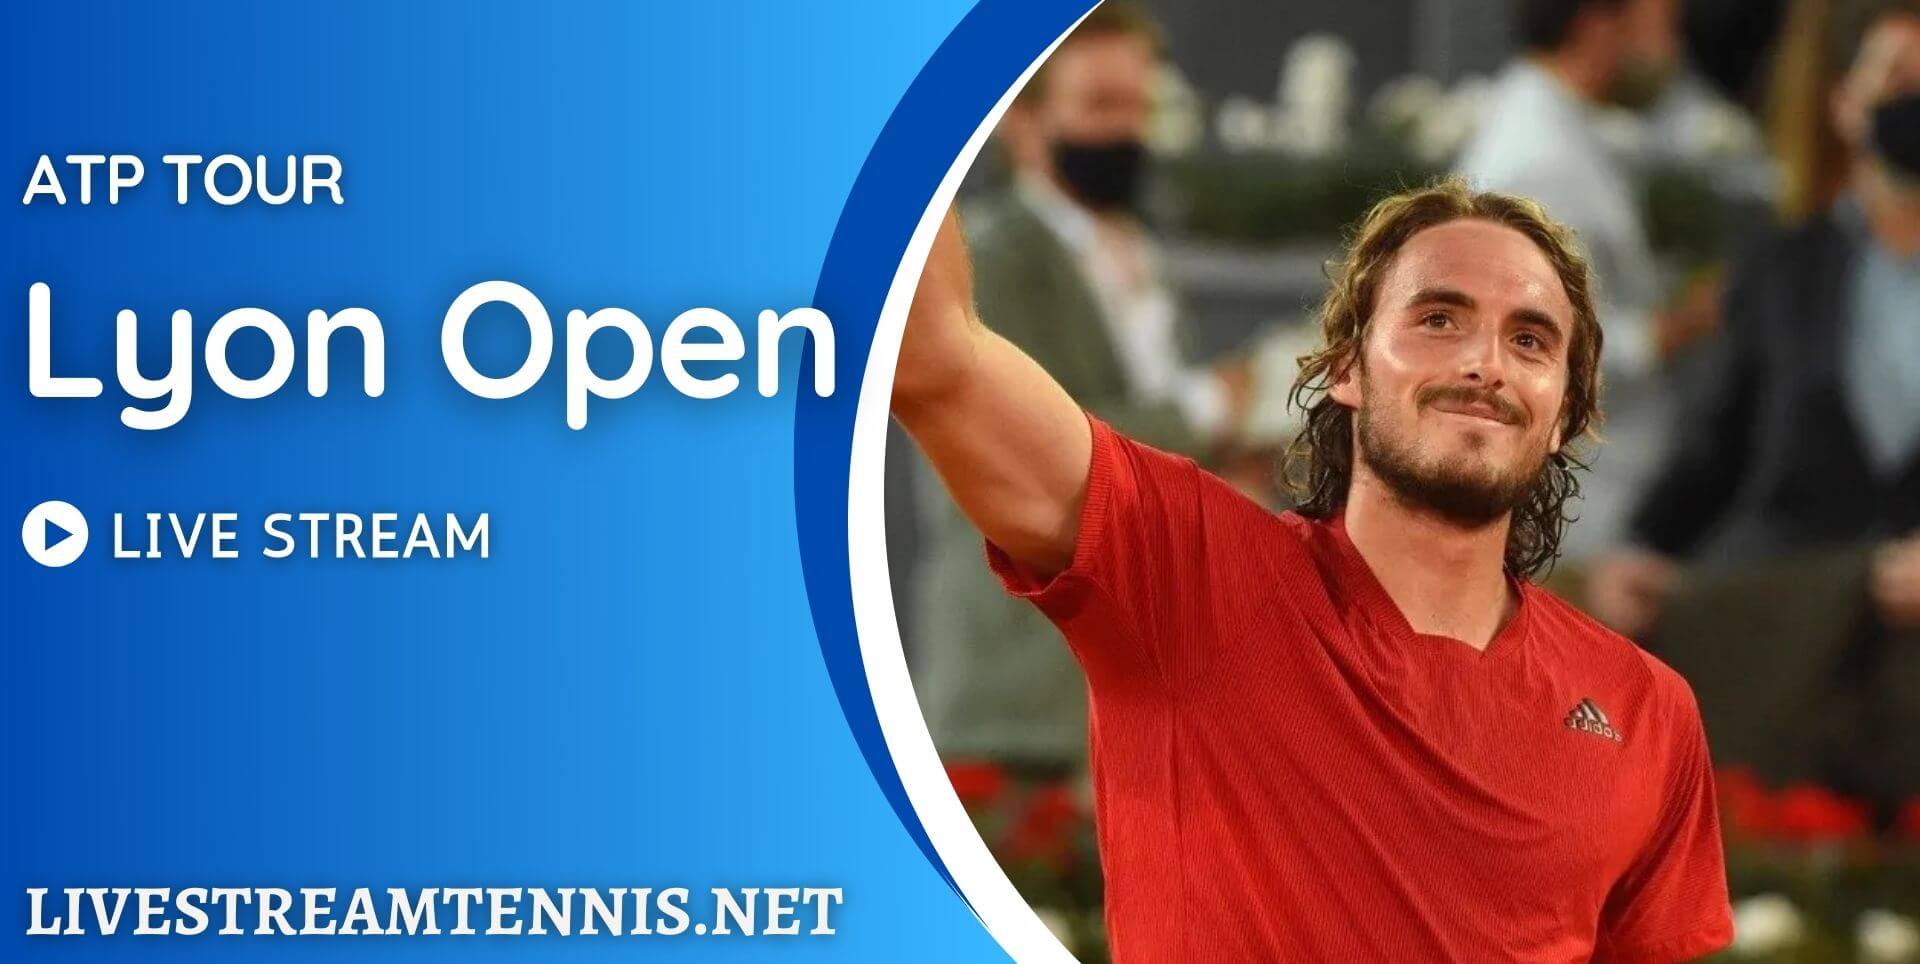 lyon-open-live-stream-atp-tour-tennis